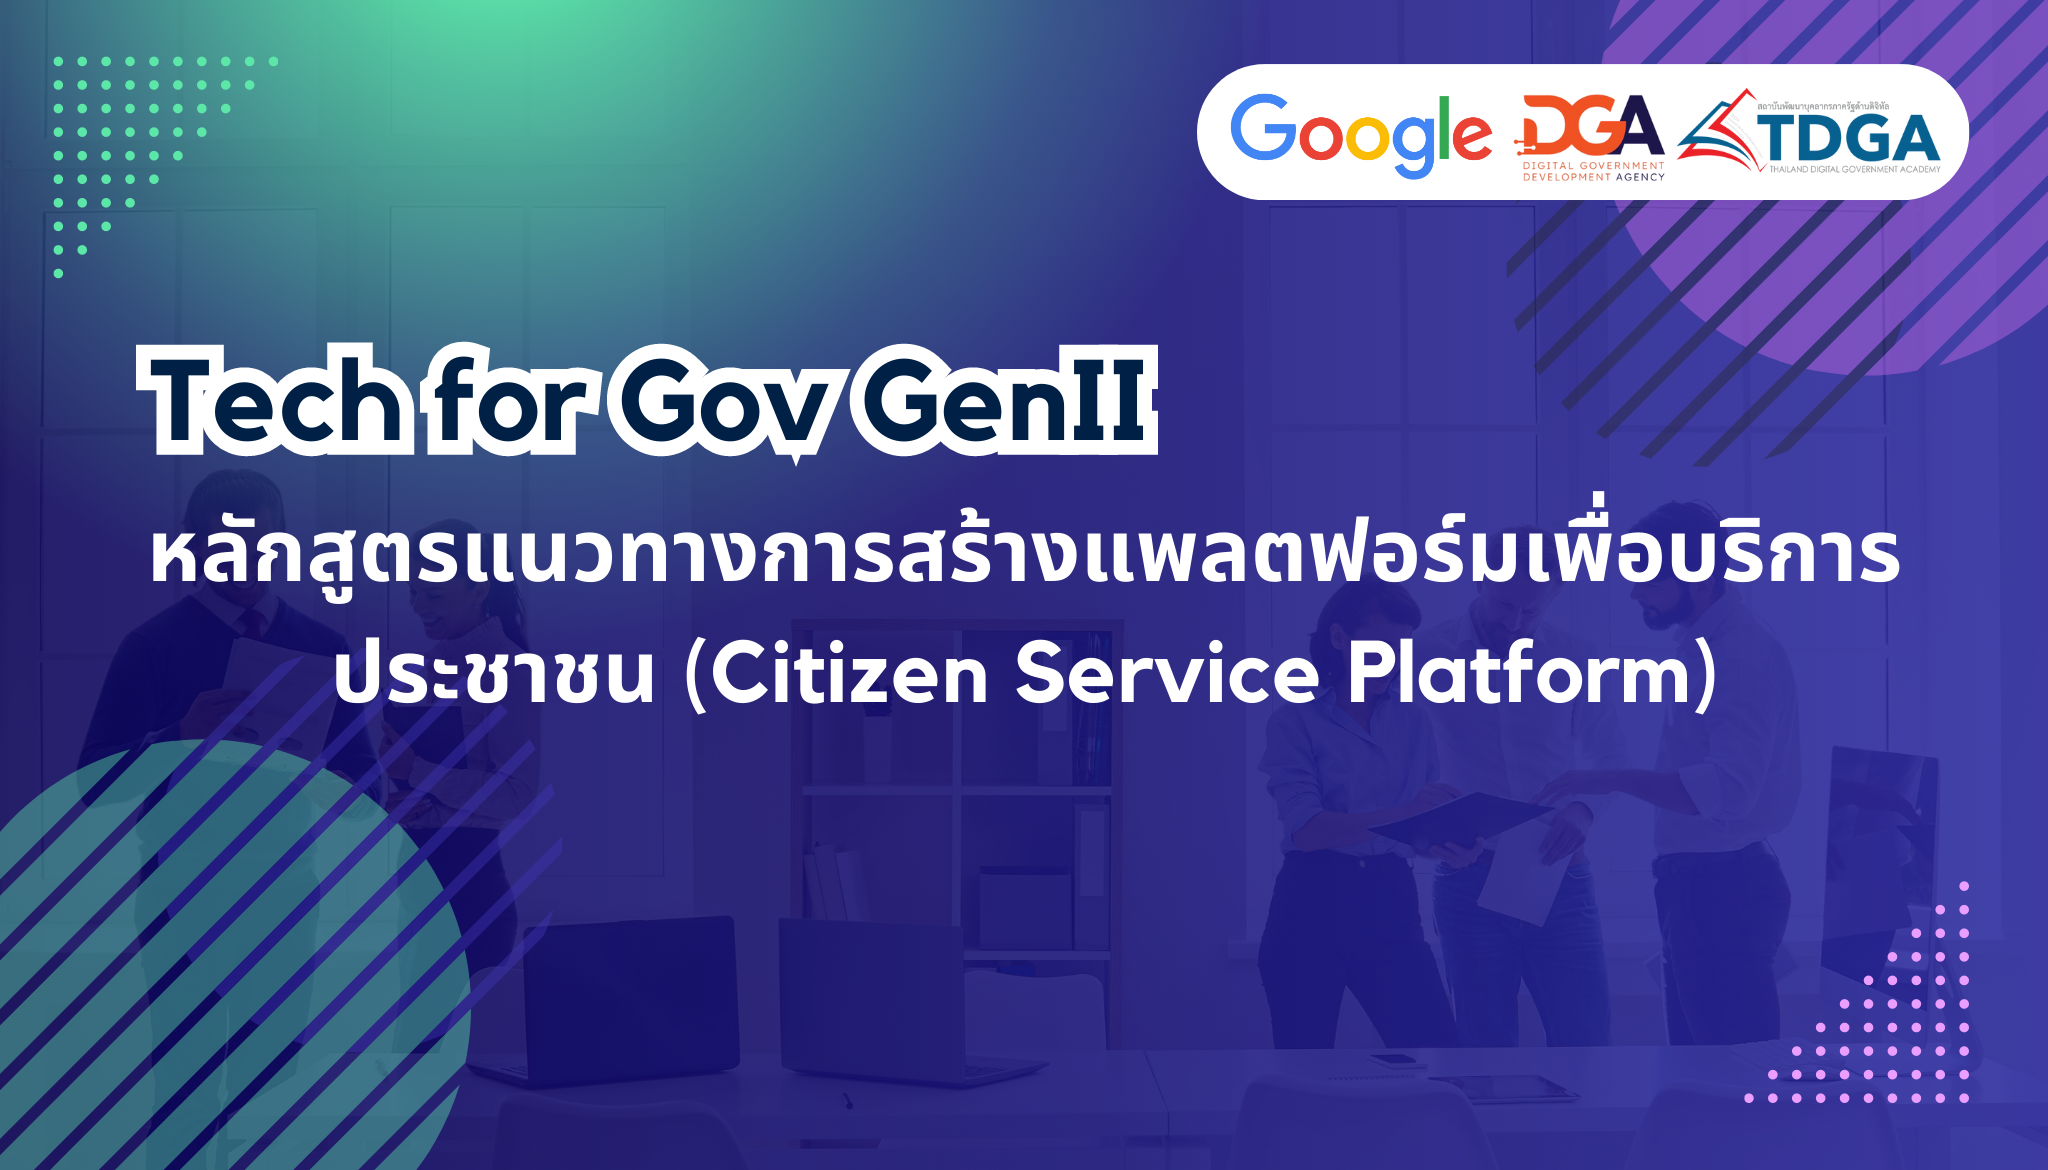 สถาบัน TDGA by DGA จัดฝึกอบรมหลักสูตรแนวทางการสร้างแพลตฟอร์มเพื่อบริการประชาชน (Citizen Service Platform) ให้แก่หน่วยงานภาครัฐ